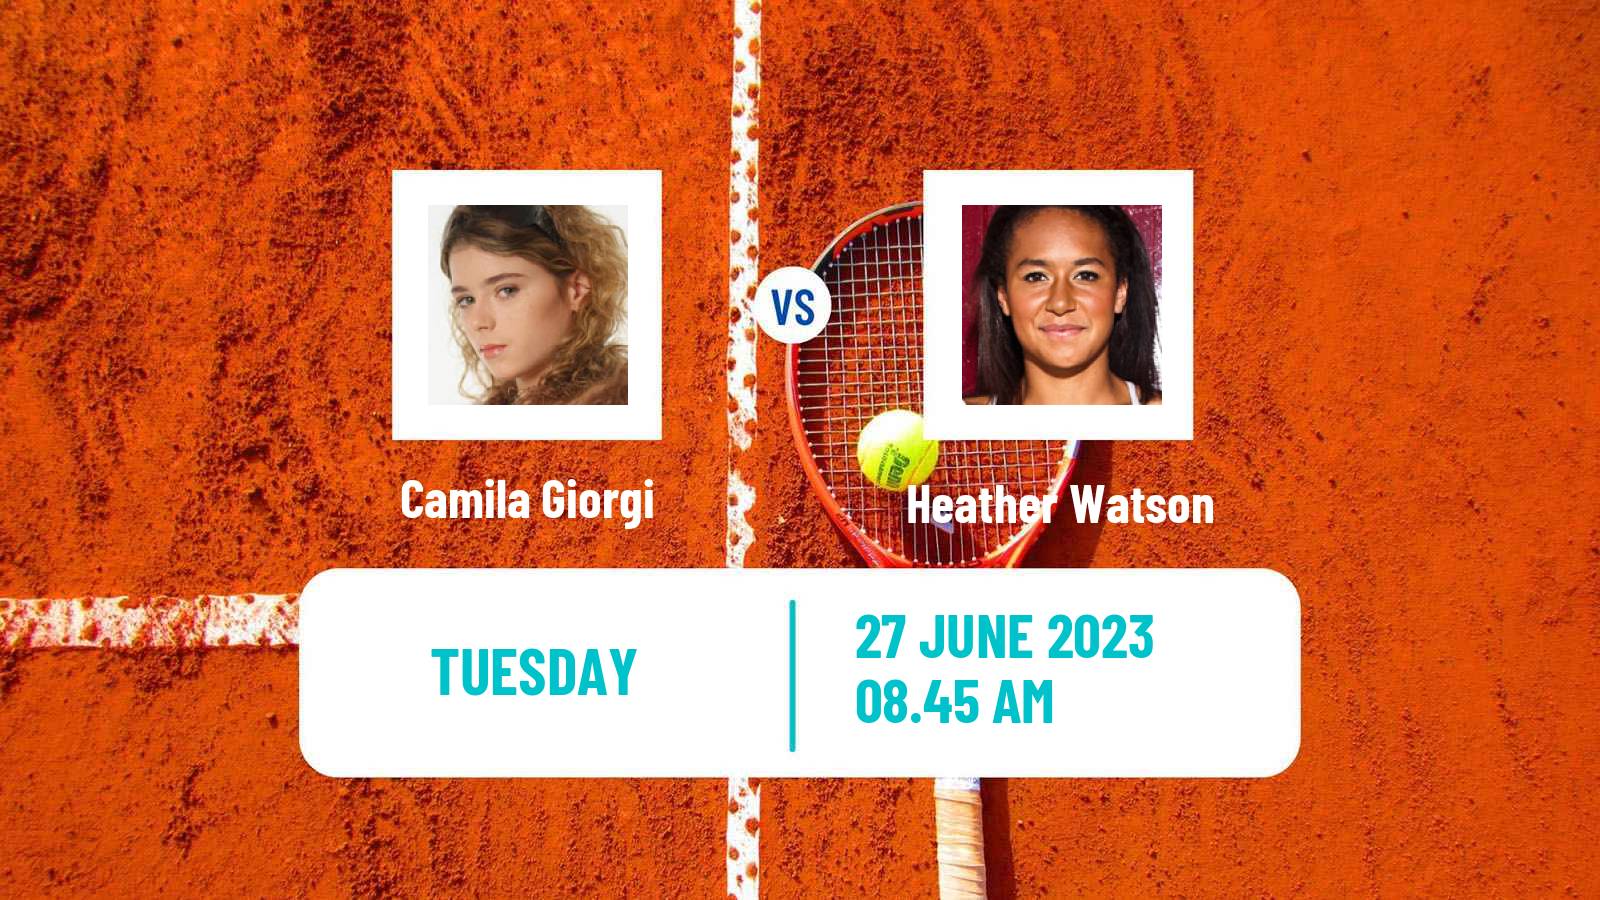 Tennis WTA Eastbourne Camila Giorgi - Heather Watson